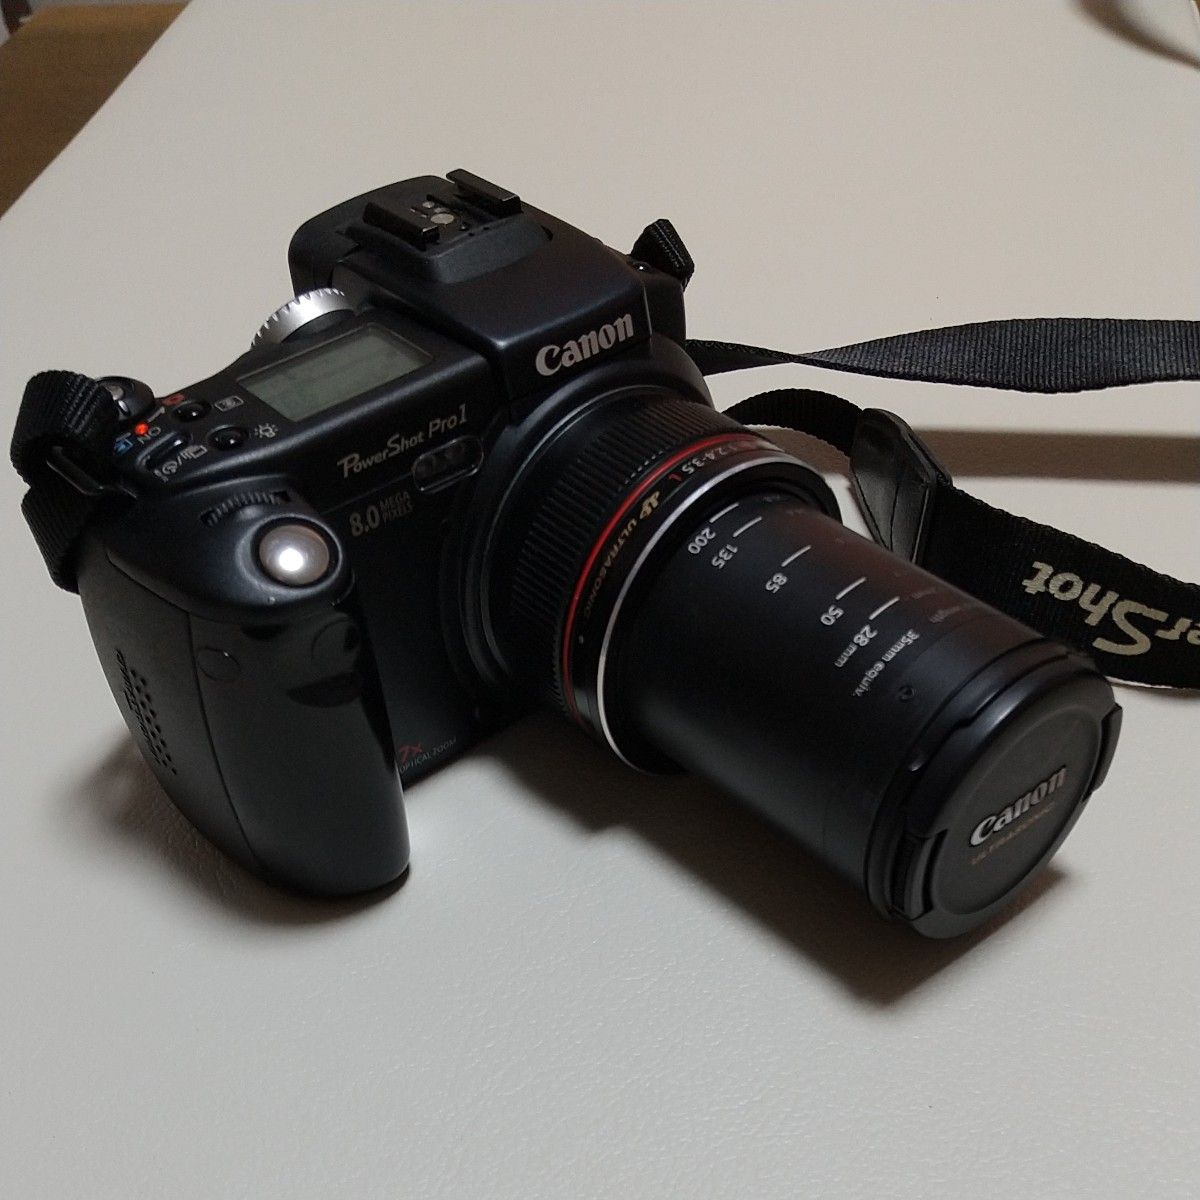 【再出品】Canon キャノン コンパクトデジタルカメラ Power shot Pro1 Lレンズ搭載 蛍石